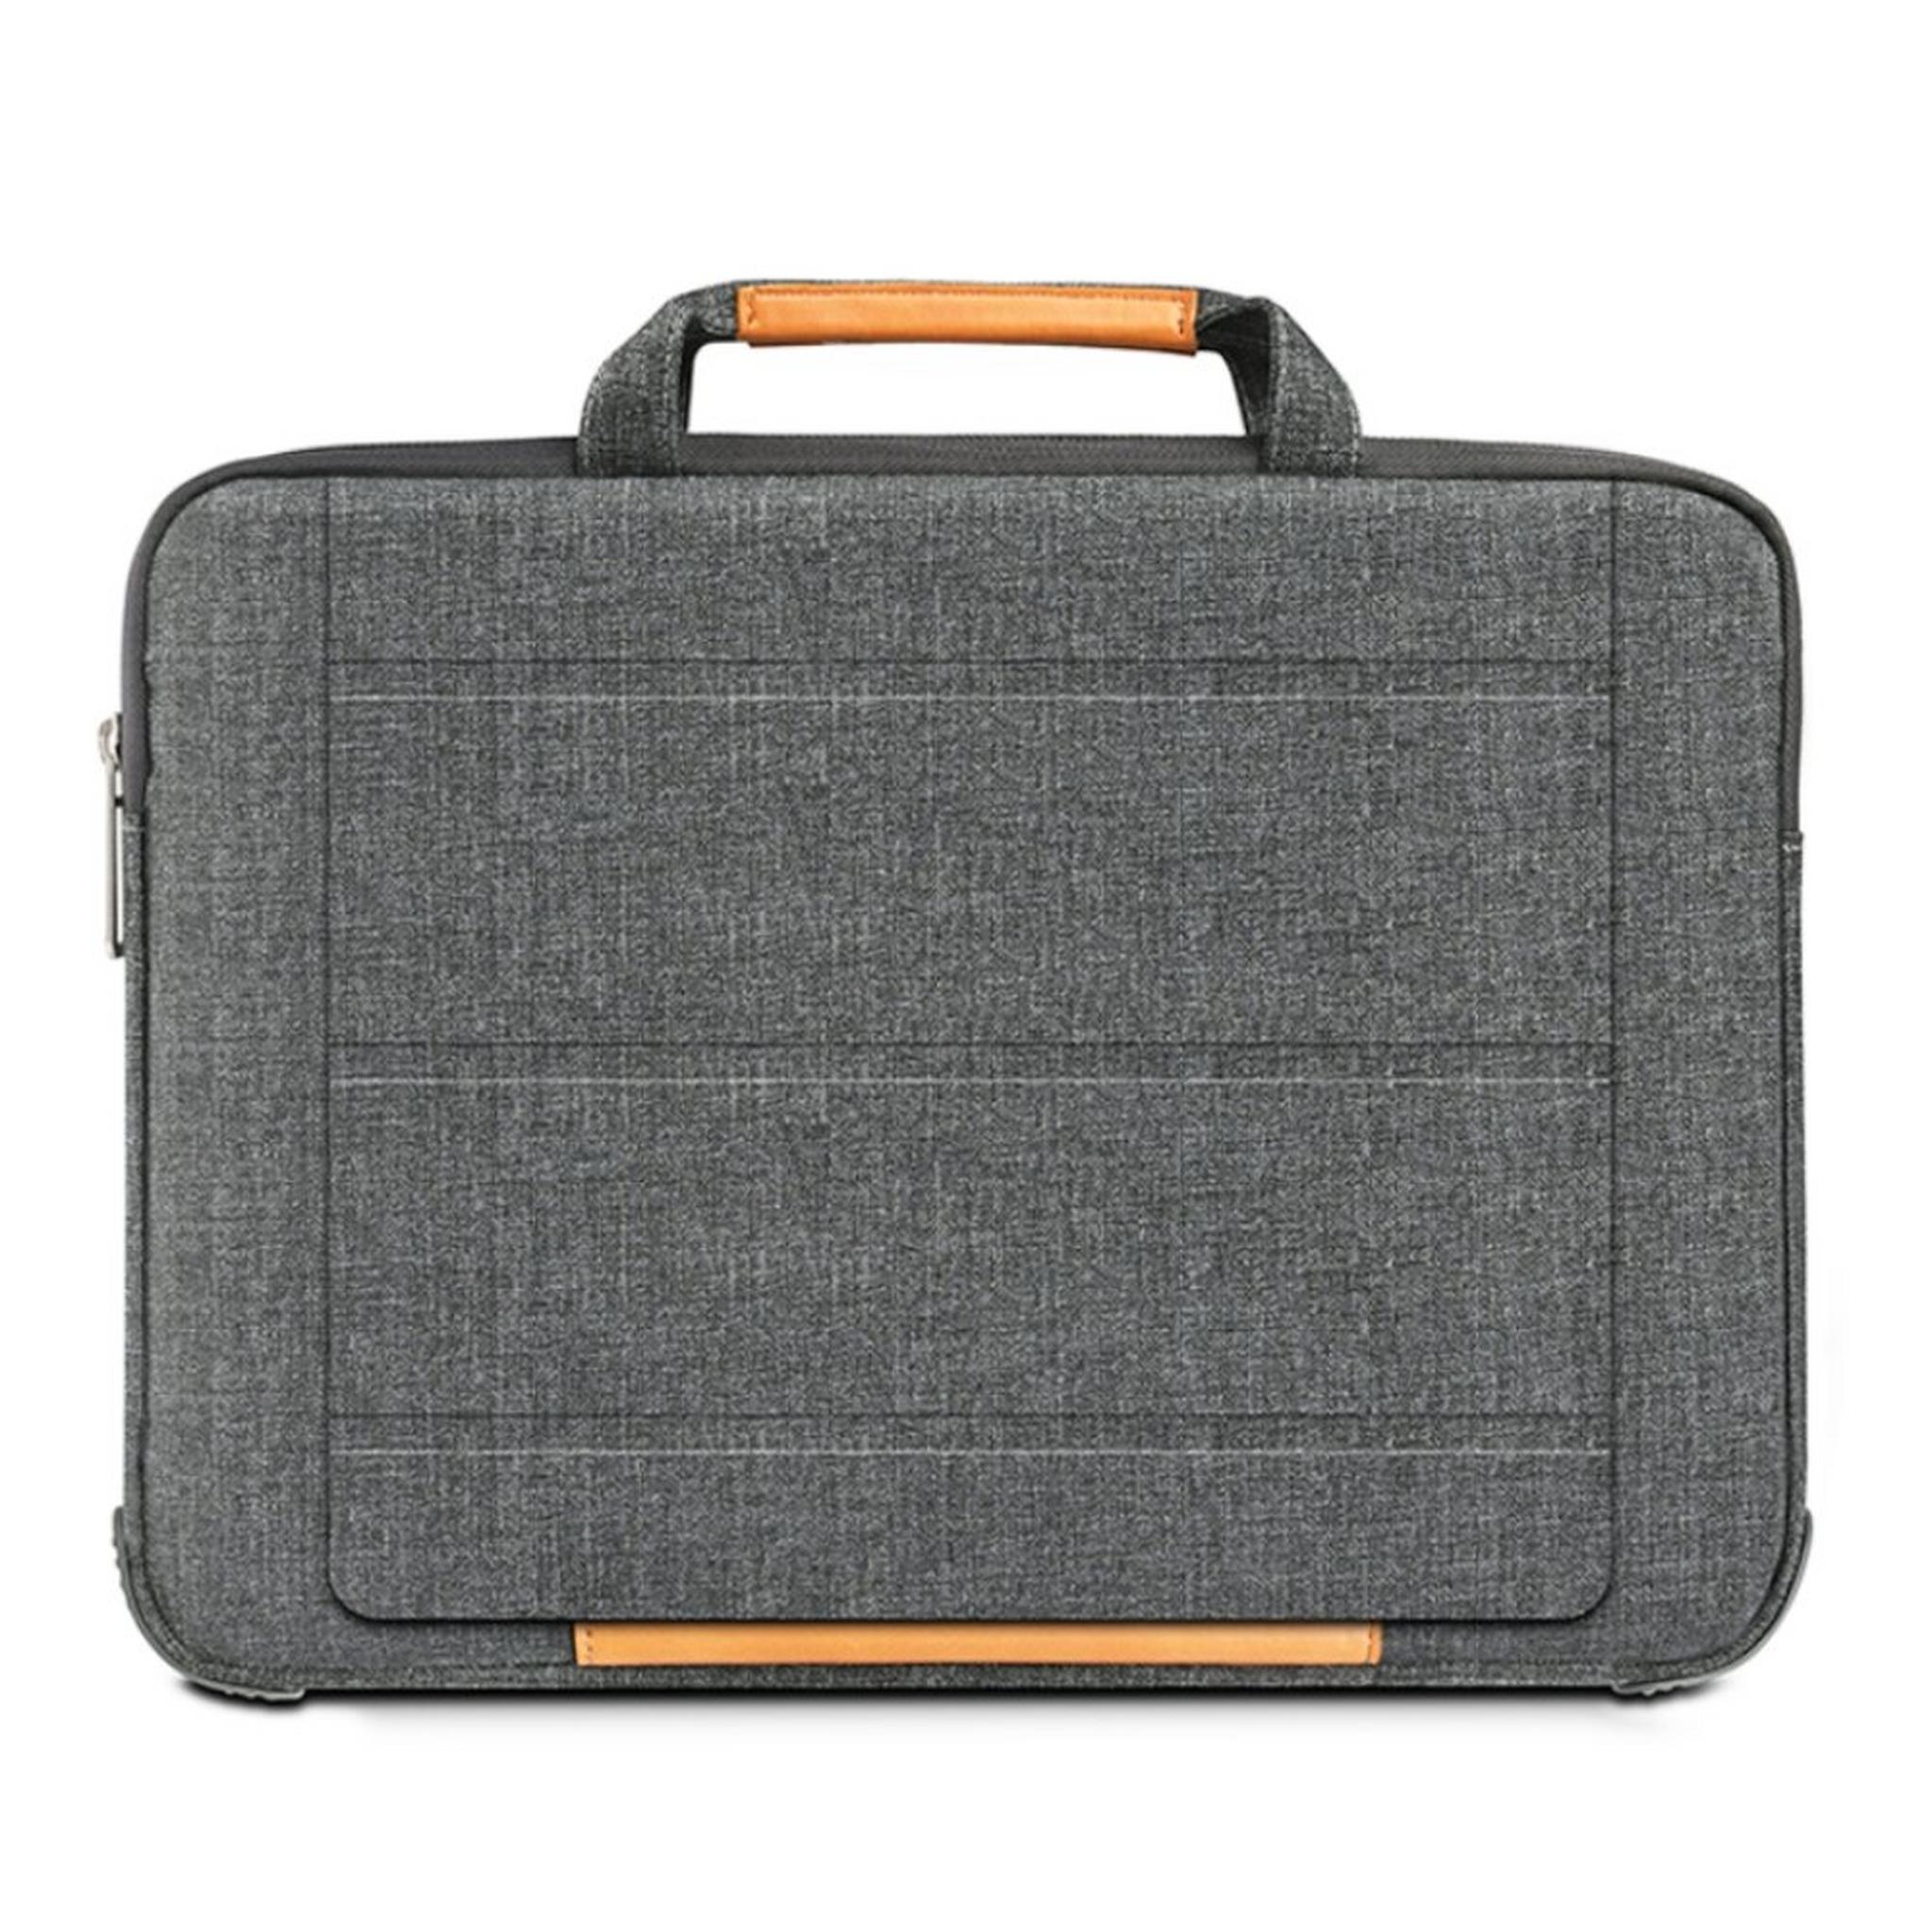 حقيبة اللابتوب الذكية لماك بوك آير بحجم 15.4 بوصة من ويو - رمادي